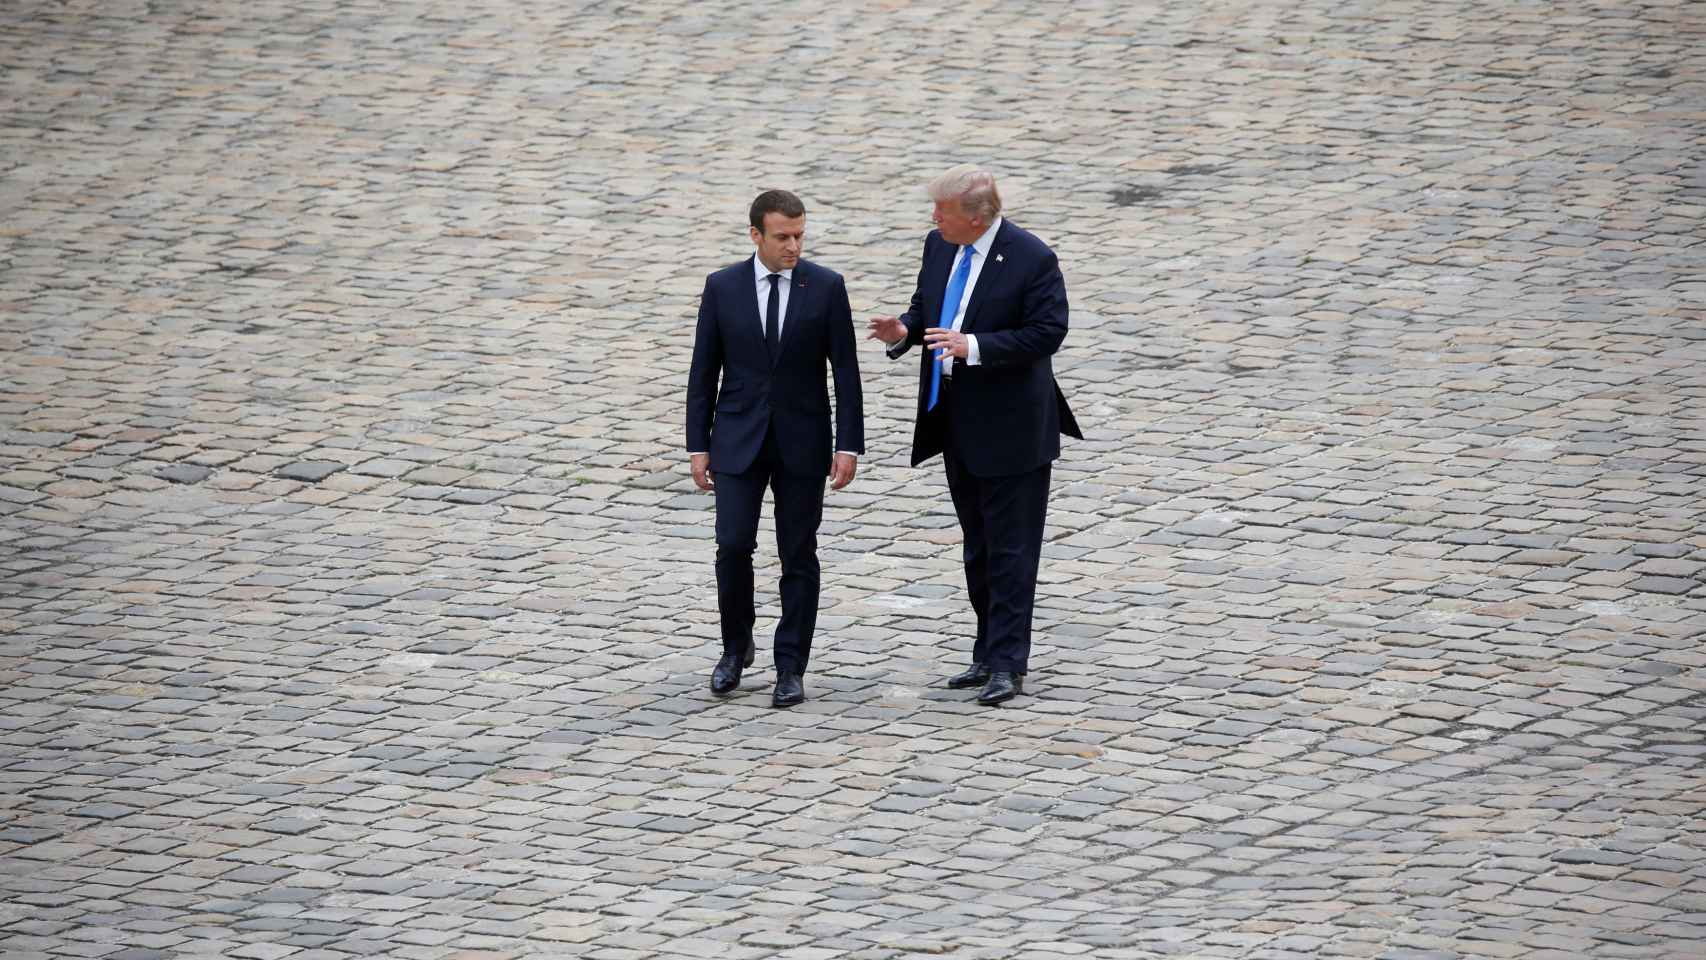 Macron confía en aumentar la relevancia internacional de Francia.